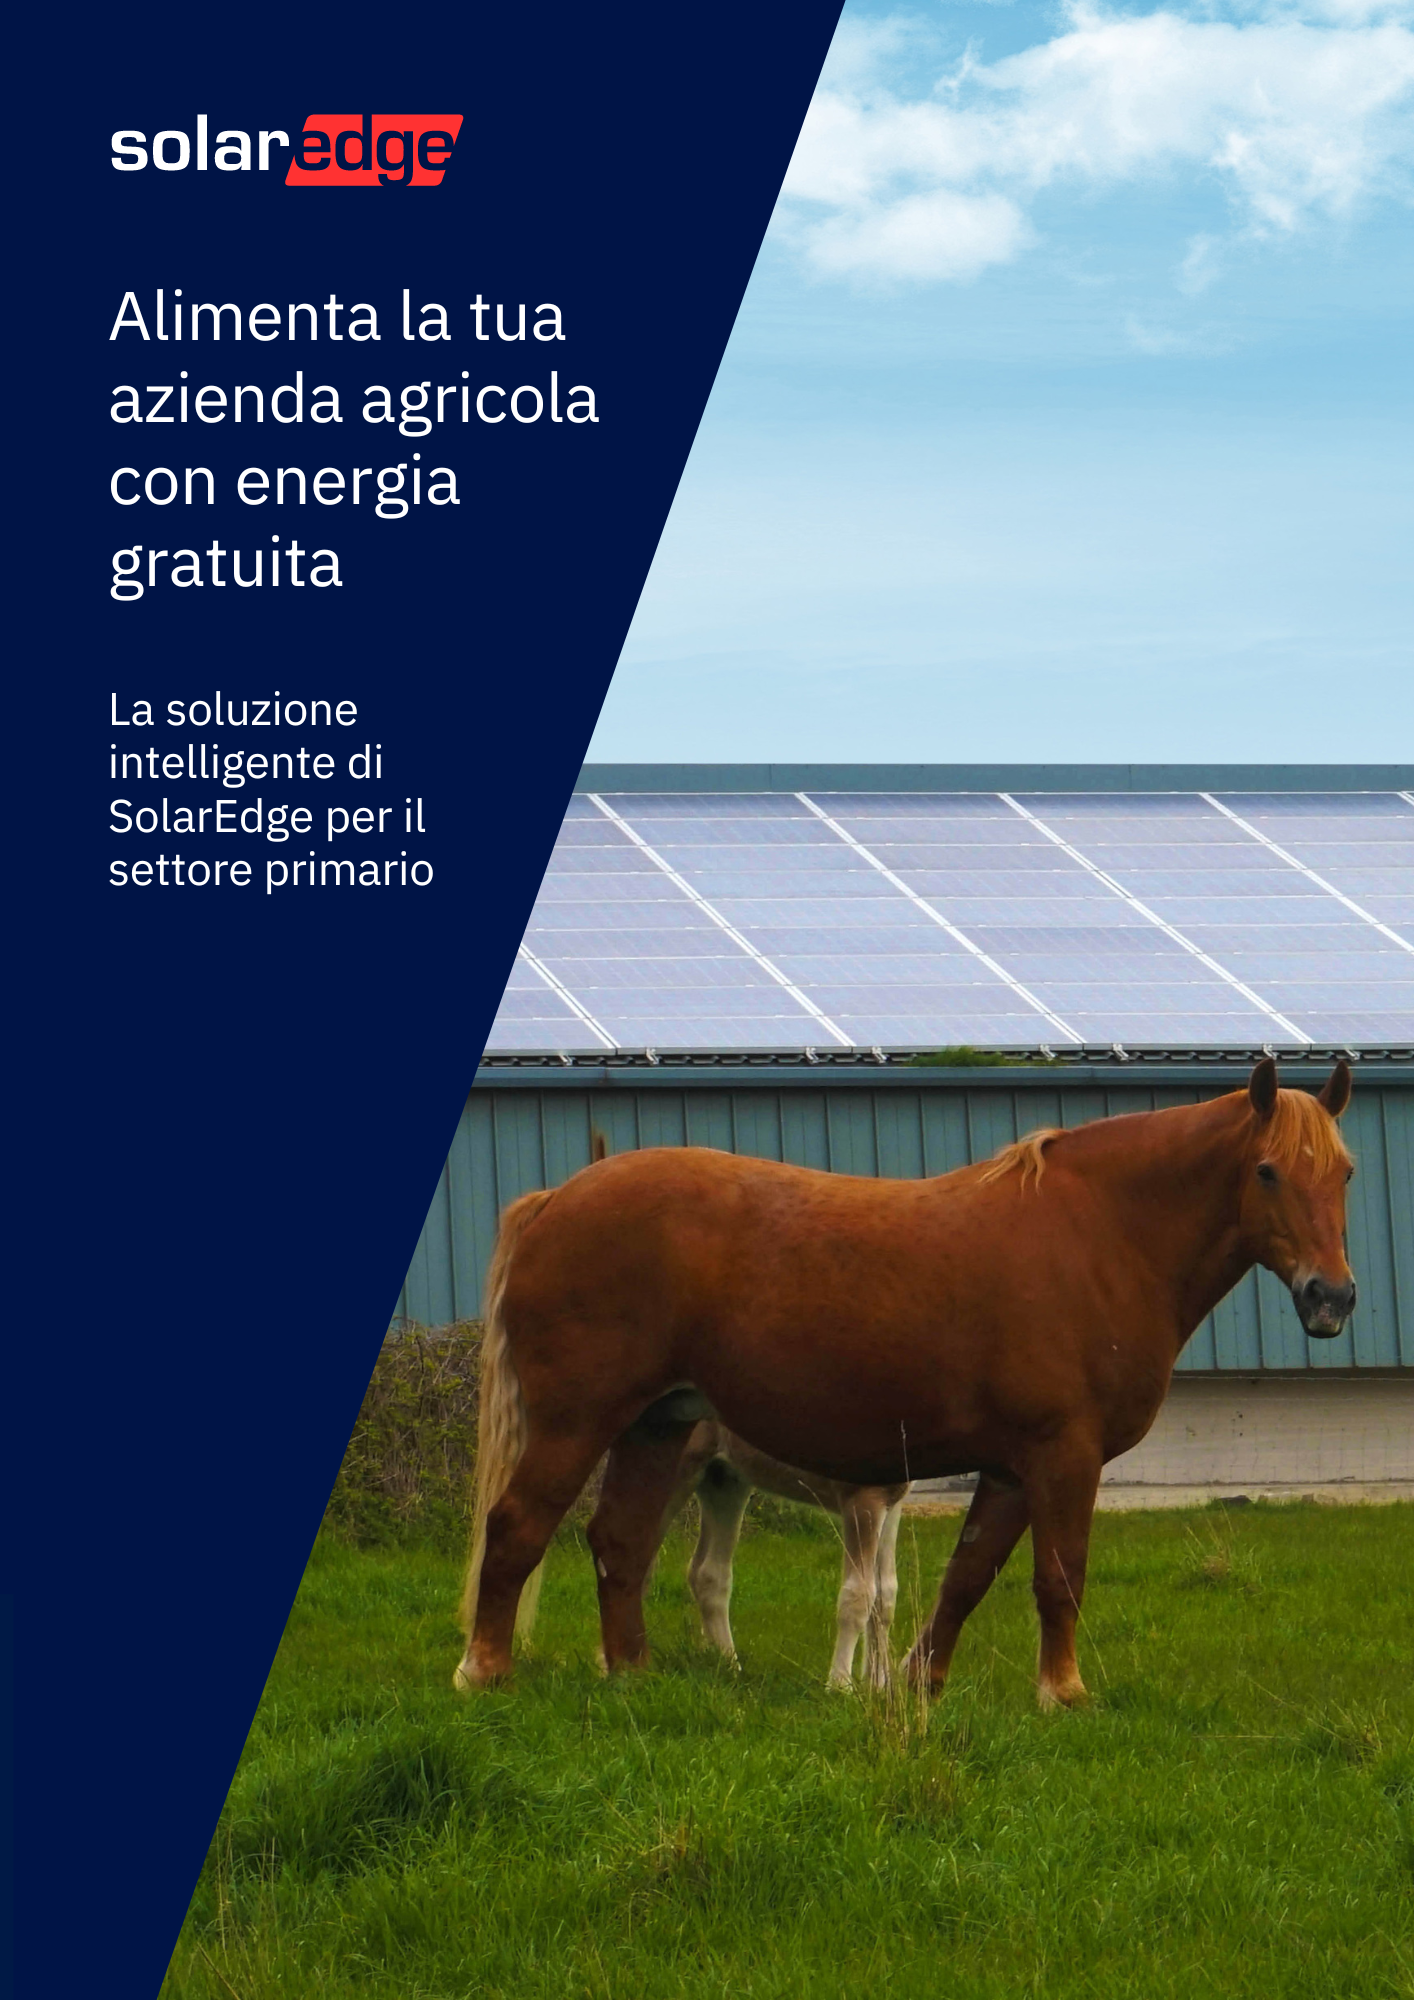 SolarEdge impianto fotovoltaico agrivoltaico per azienda agricola